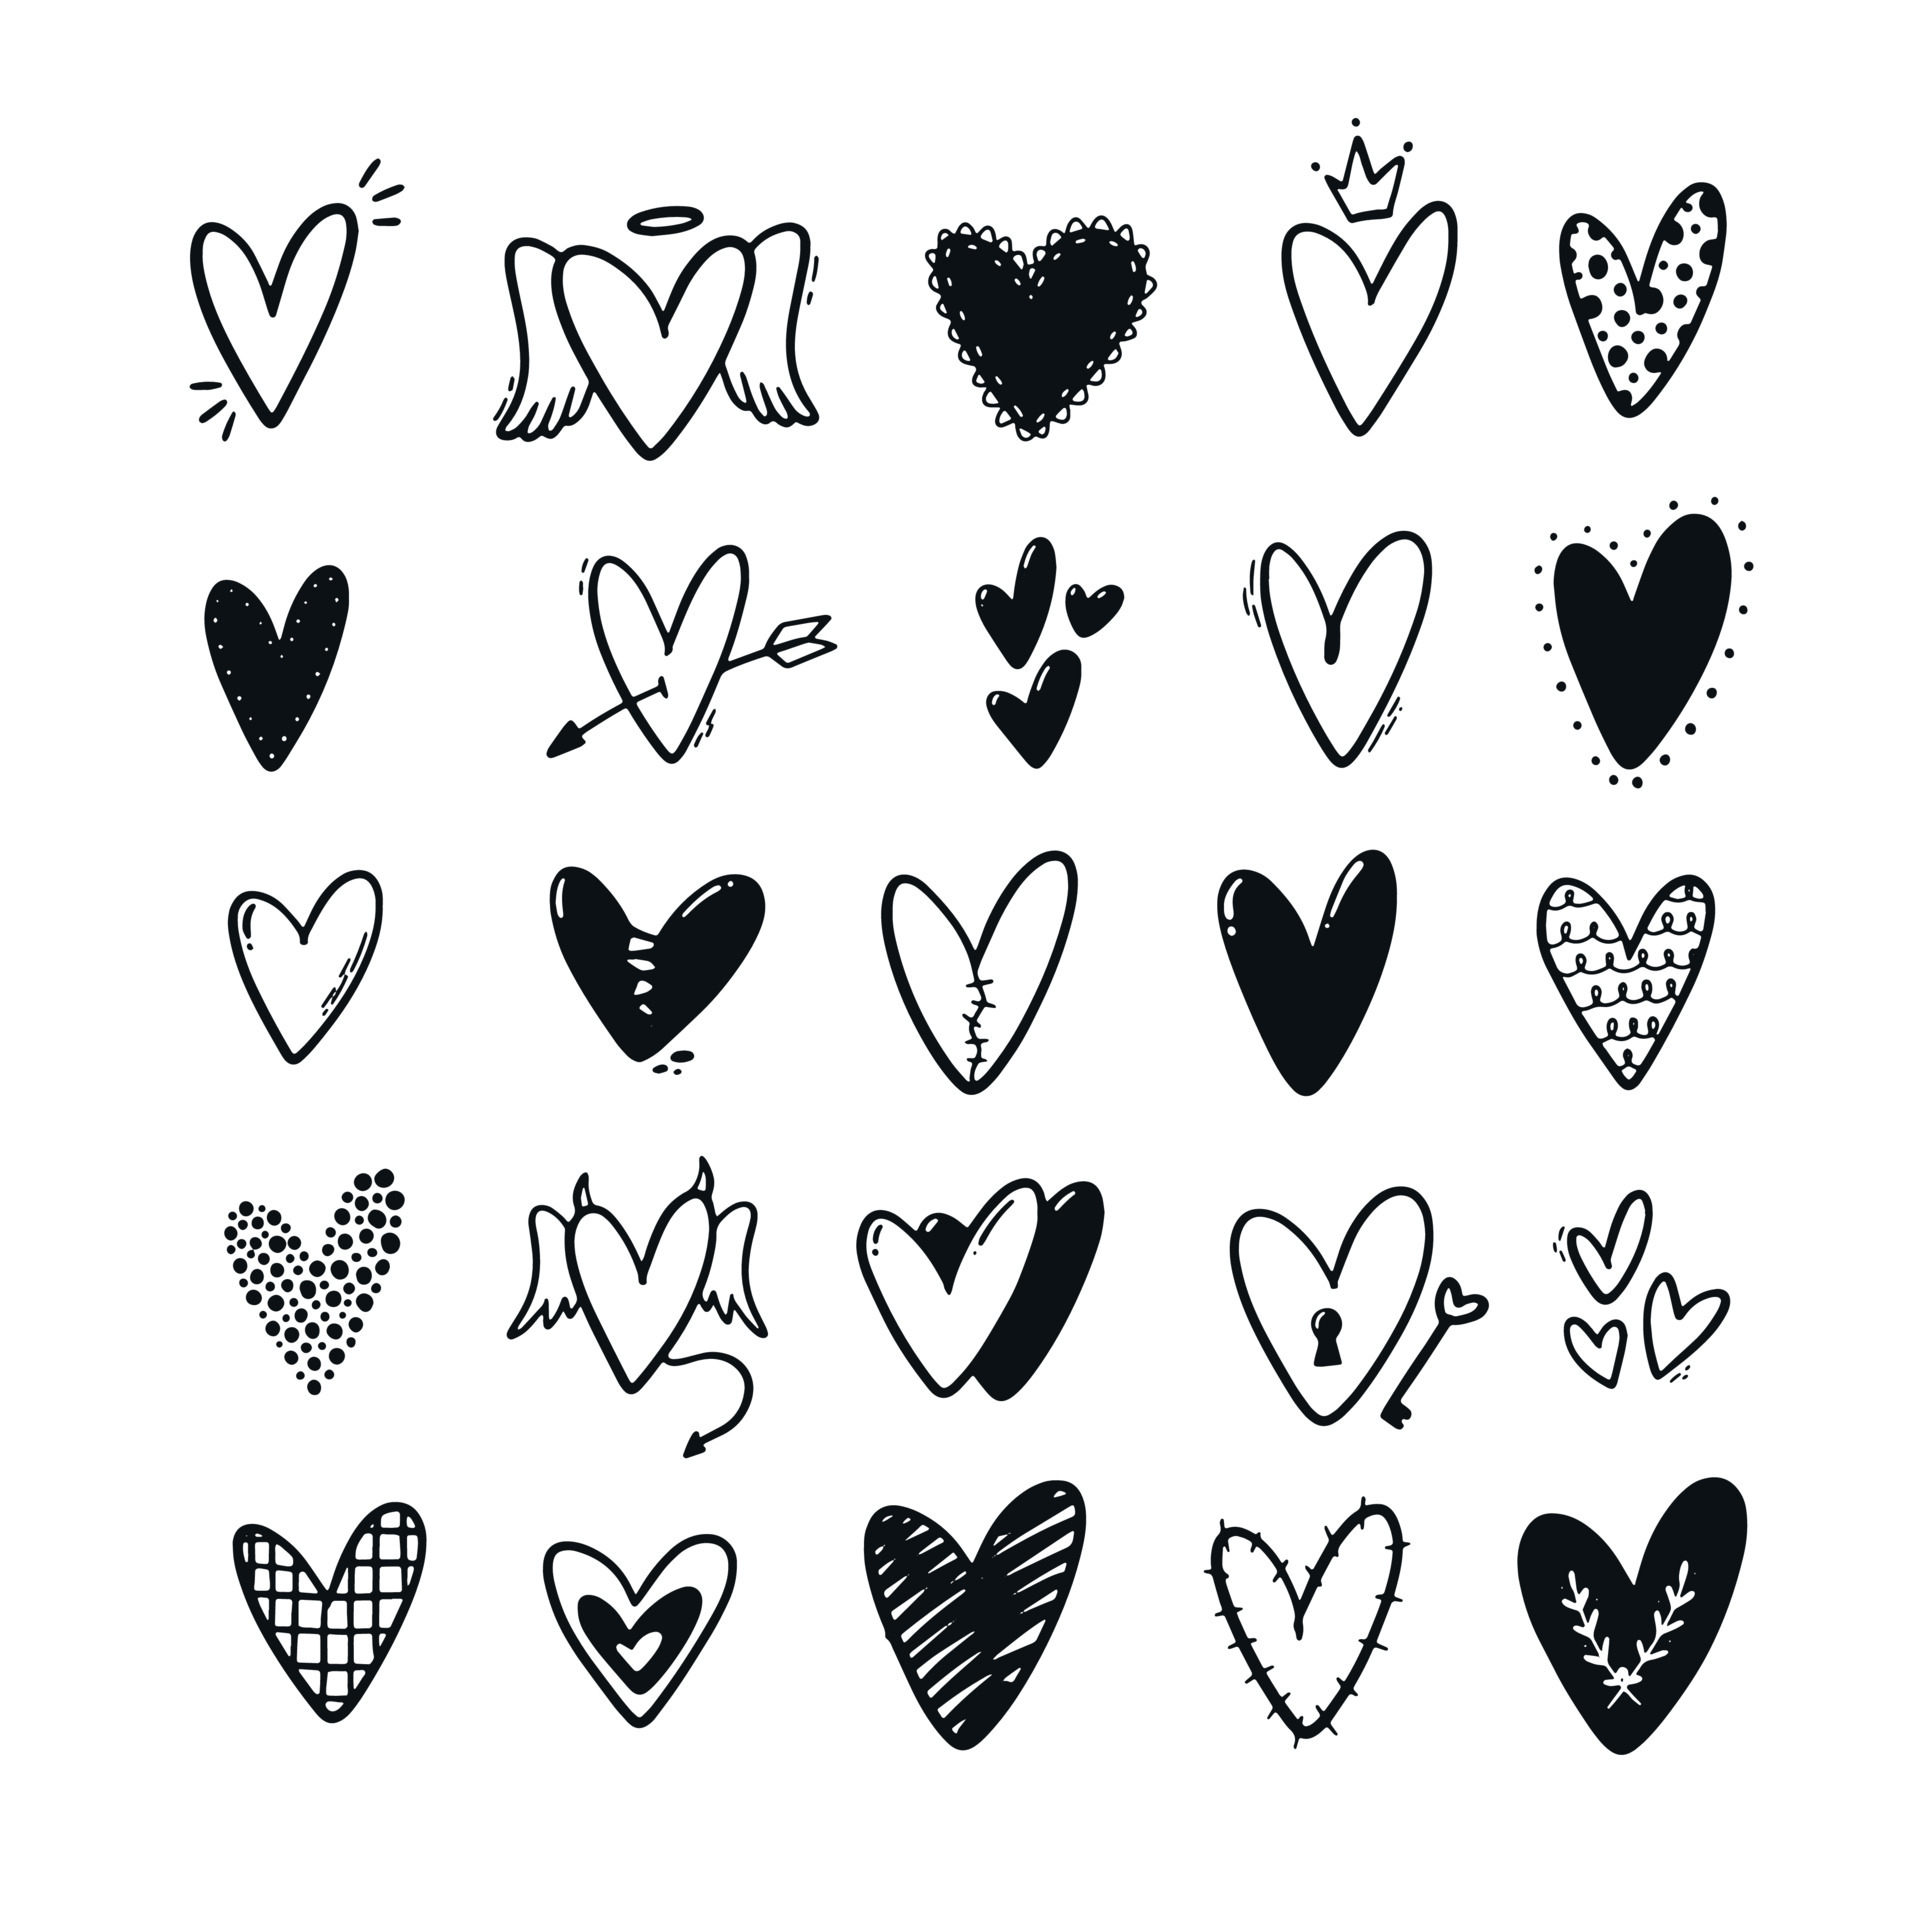 Trái tim luôn là biểu tượng tình yêu và sự gắn kết. Hãy cùng nhau thêm sắc màu cho cuộc sống bằng những heart sticker xinh xắn này và gửi tình cảm đến những người yêu thương.